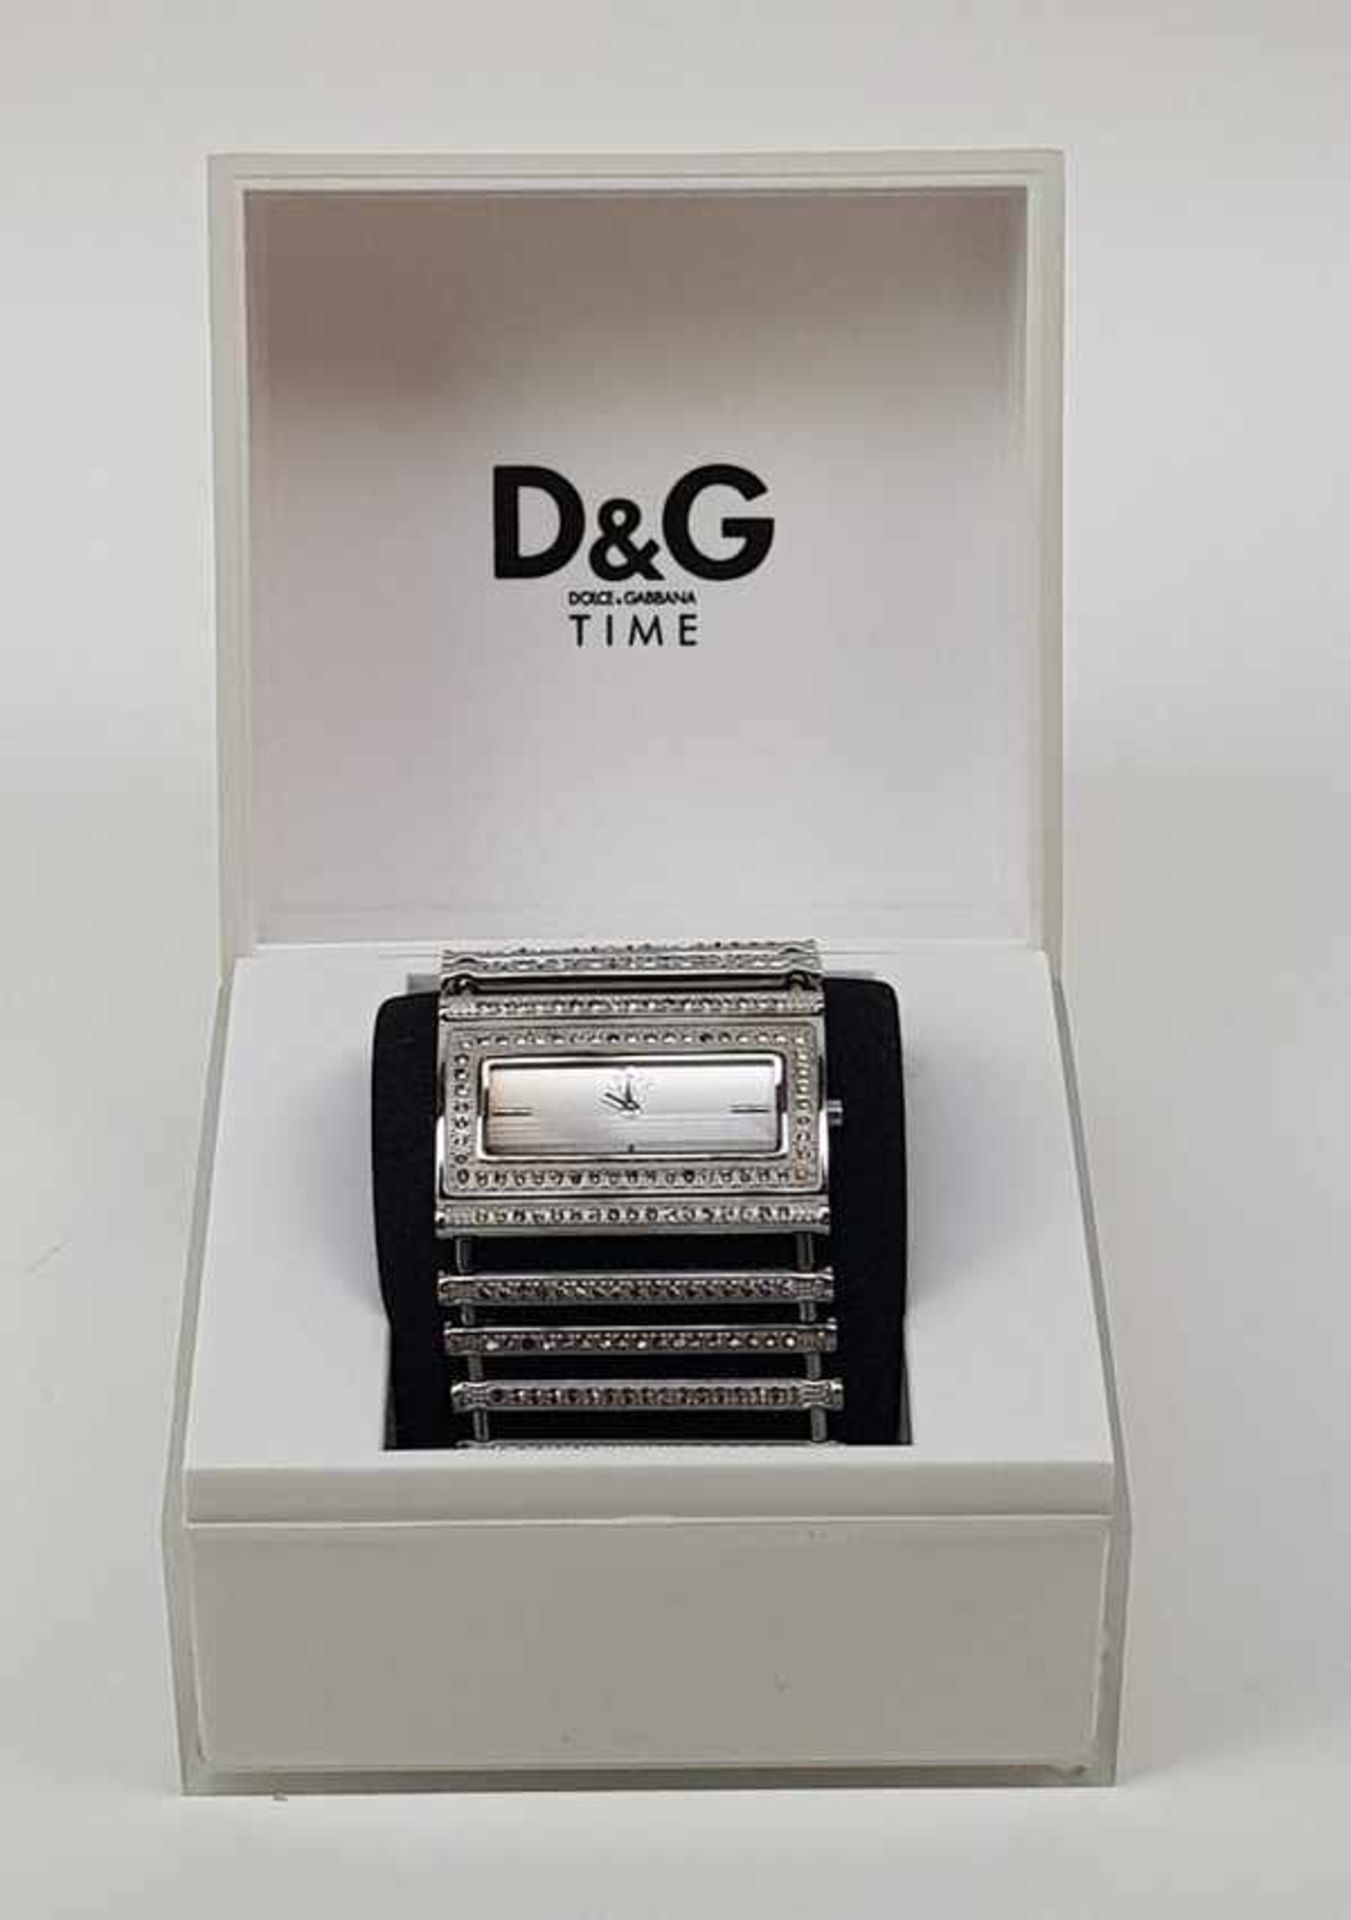 (Design) Dolce & Gabbana horlogeHorloge Dolce & Gabbana in orginele doos. Conditie: Verkleuring